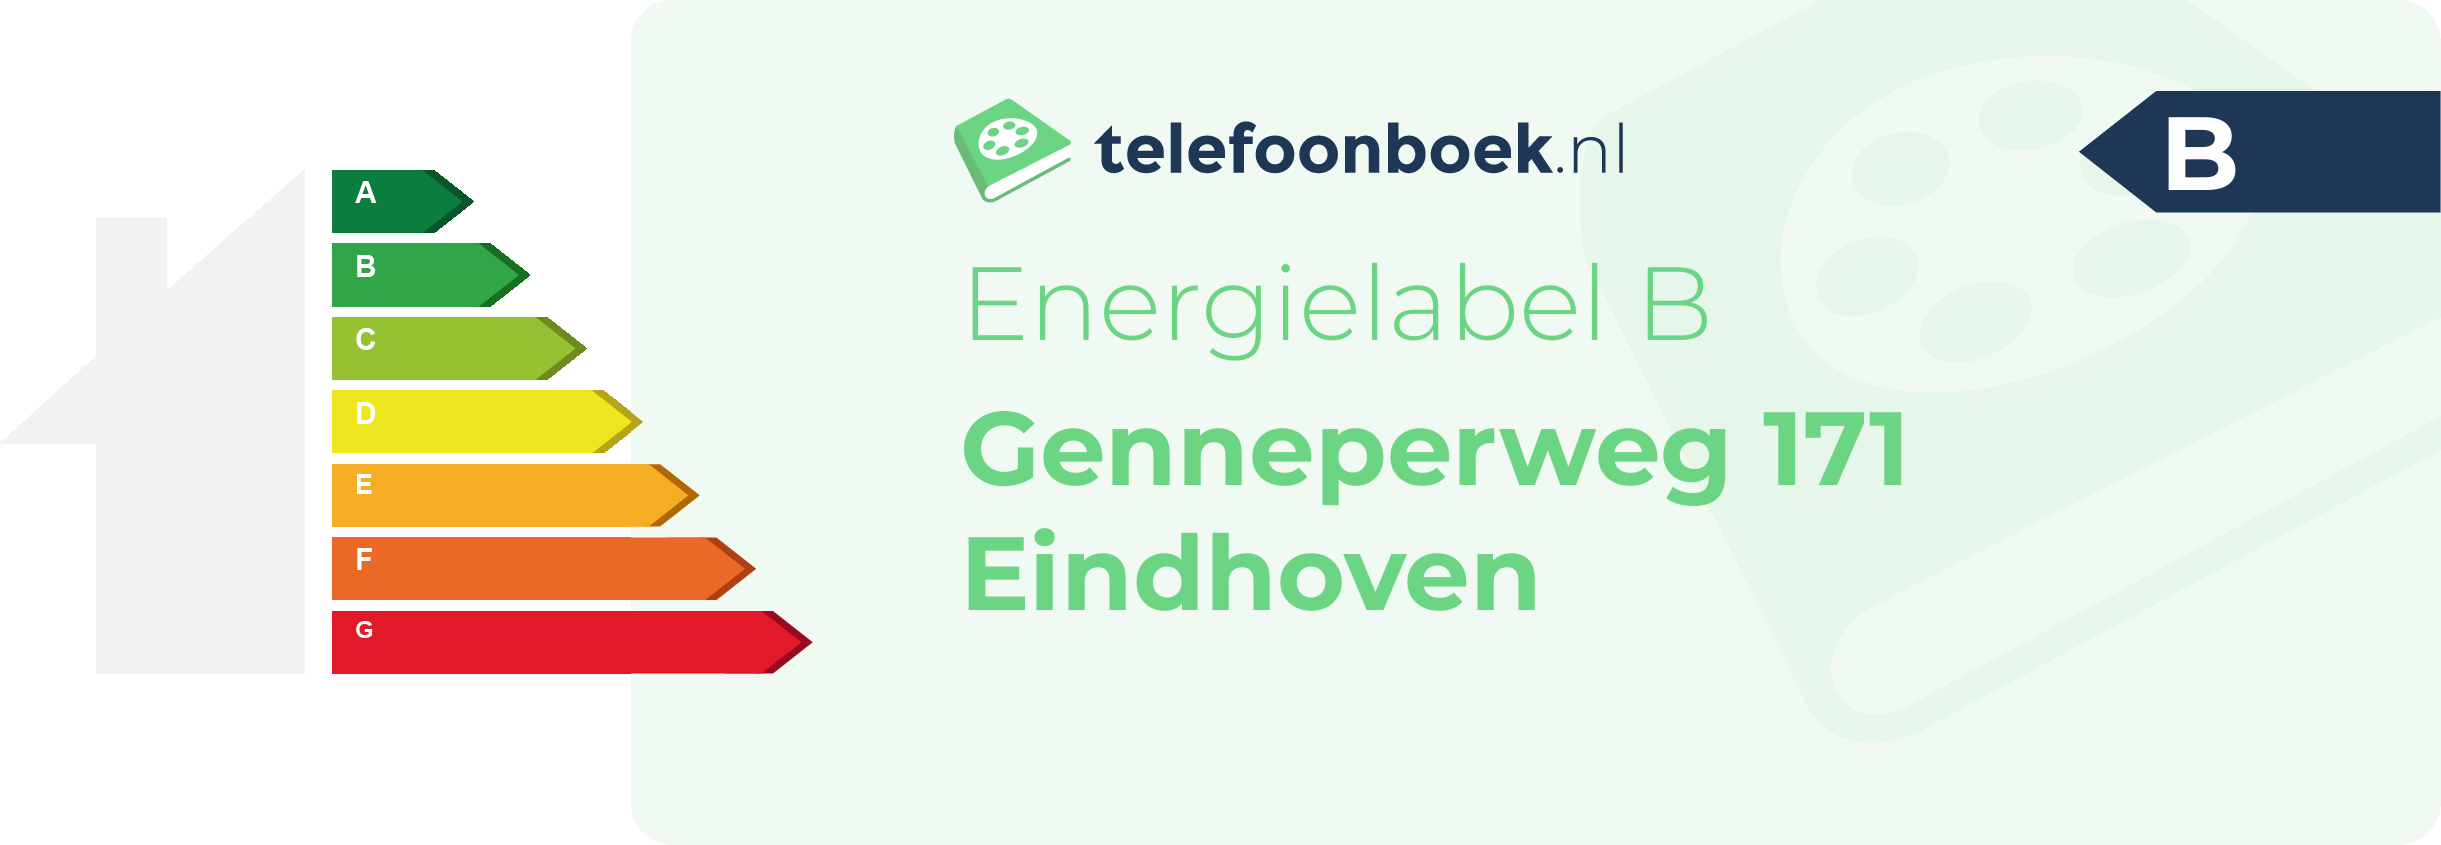 Energielabel Genneperweg 171 Eindhoven